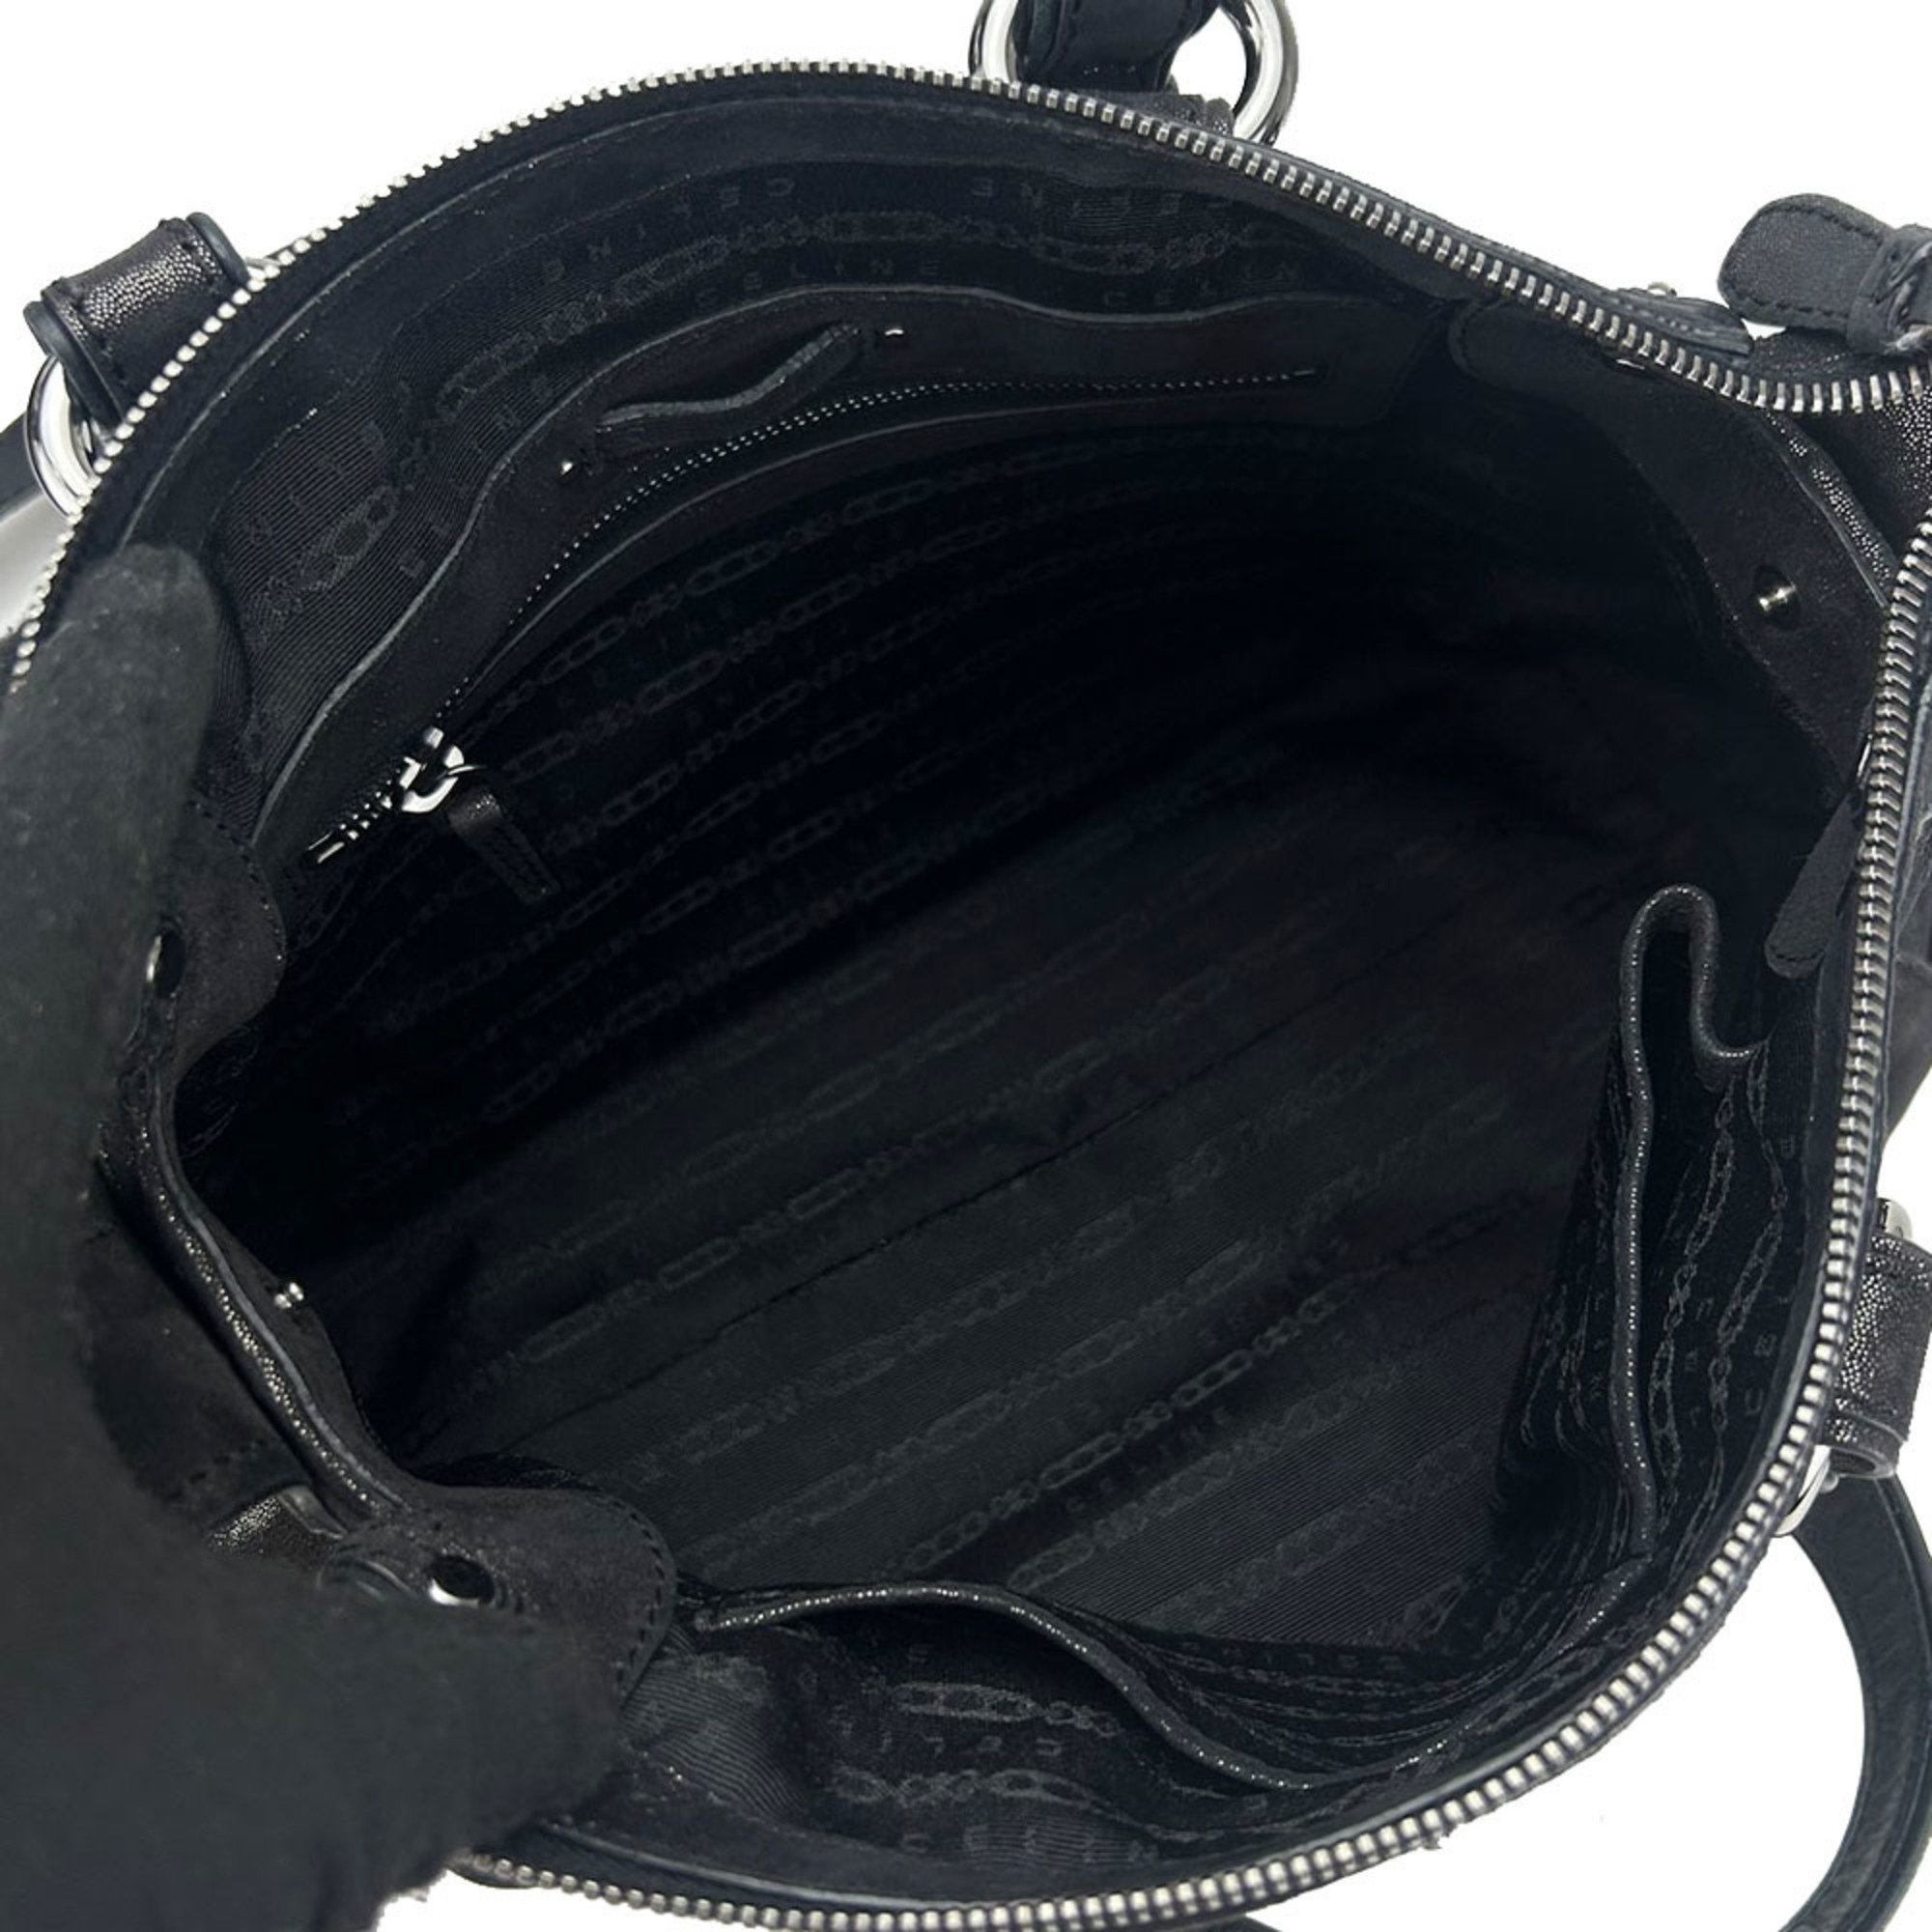 CELINE handbag shoulder bag leather black chic ladies hand